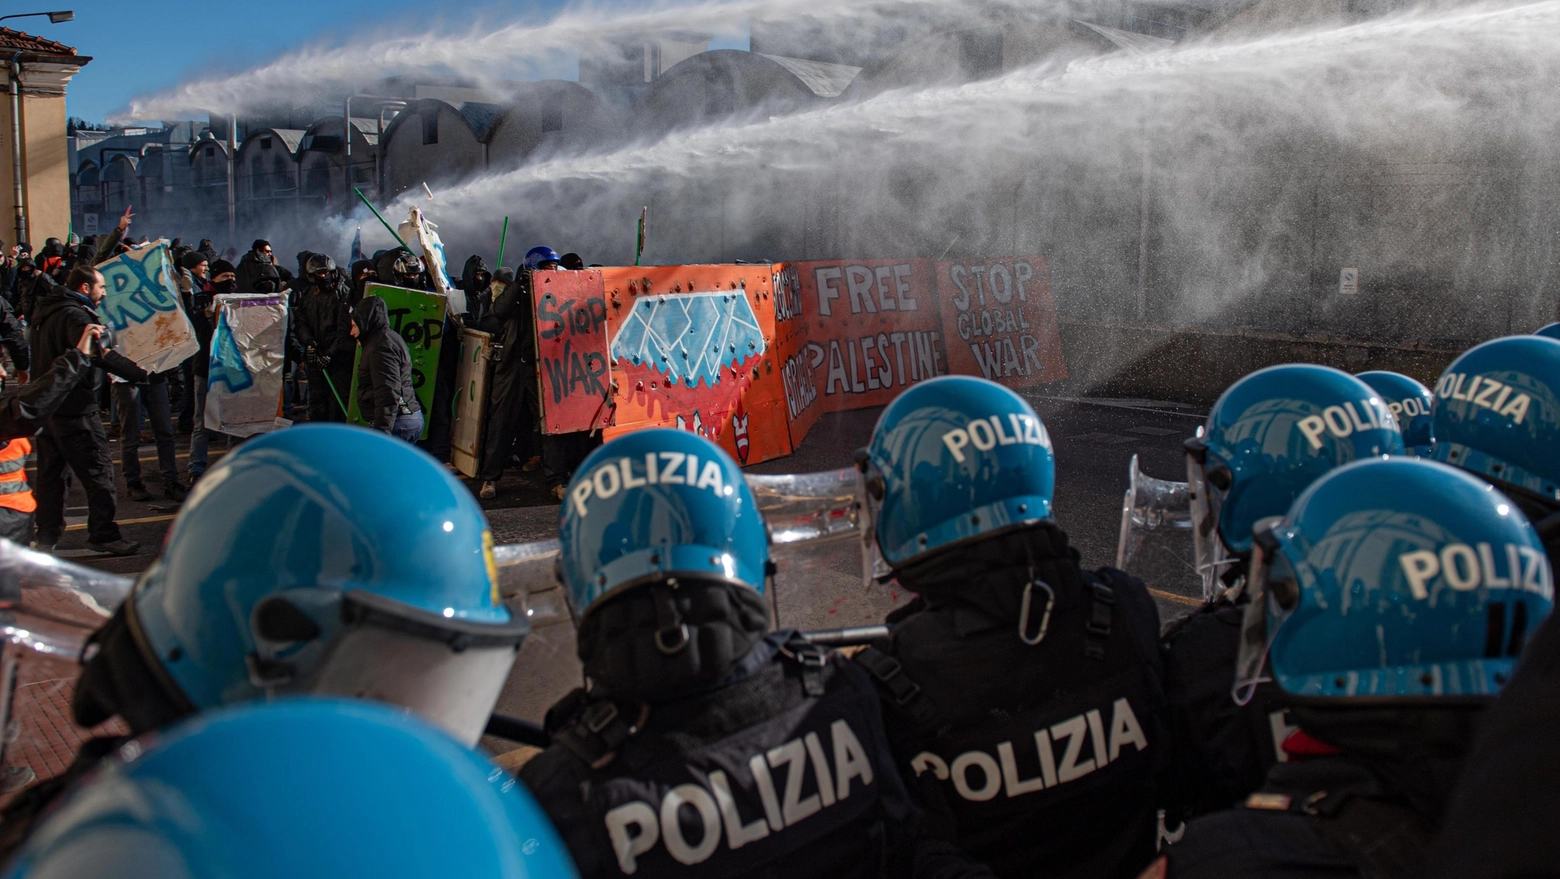 Idranti puntati contro i manifestanti alla Fiera di Vicenza